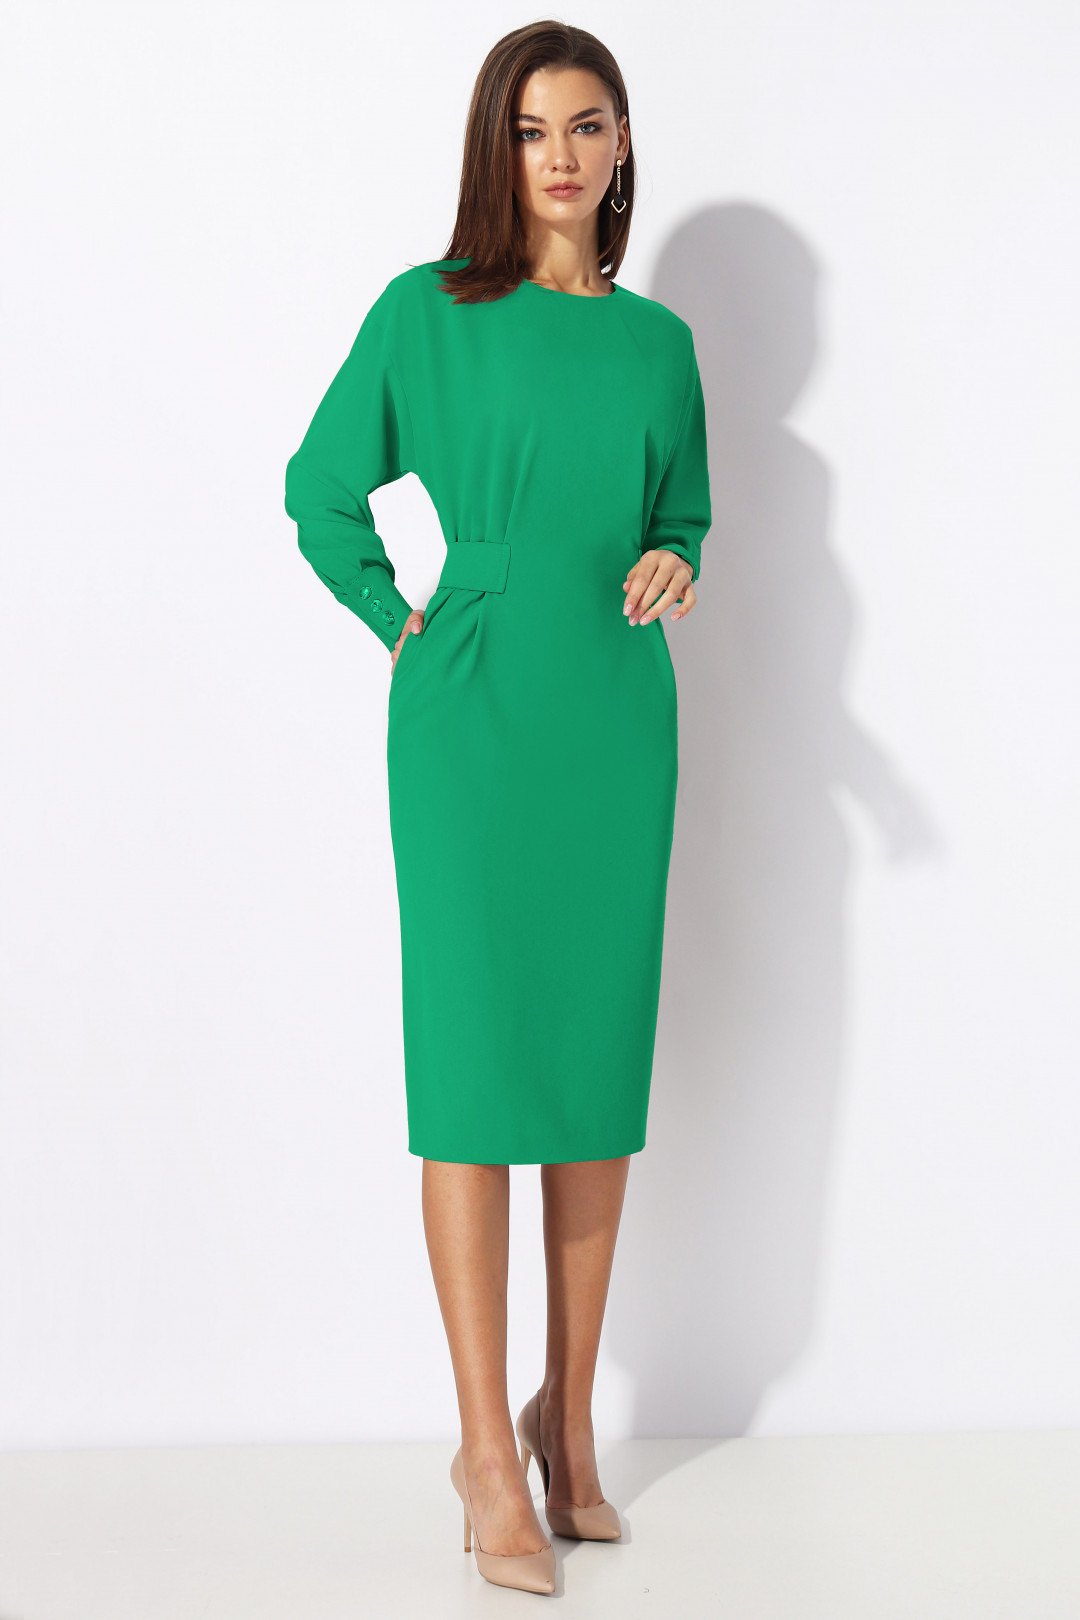 Платье МиА-Мода 1197-5 зеленый